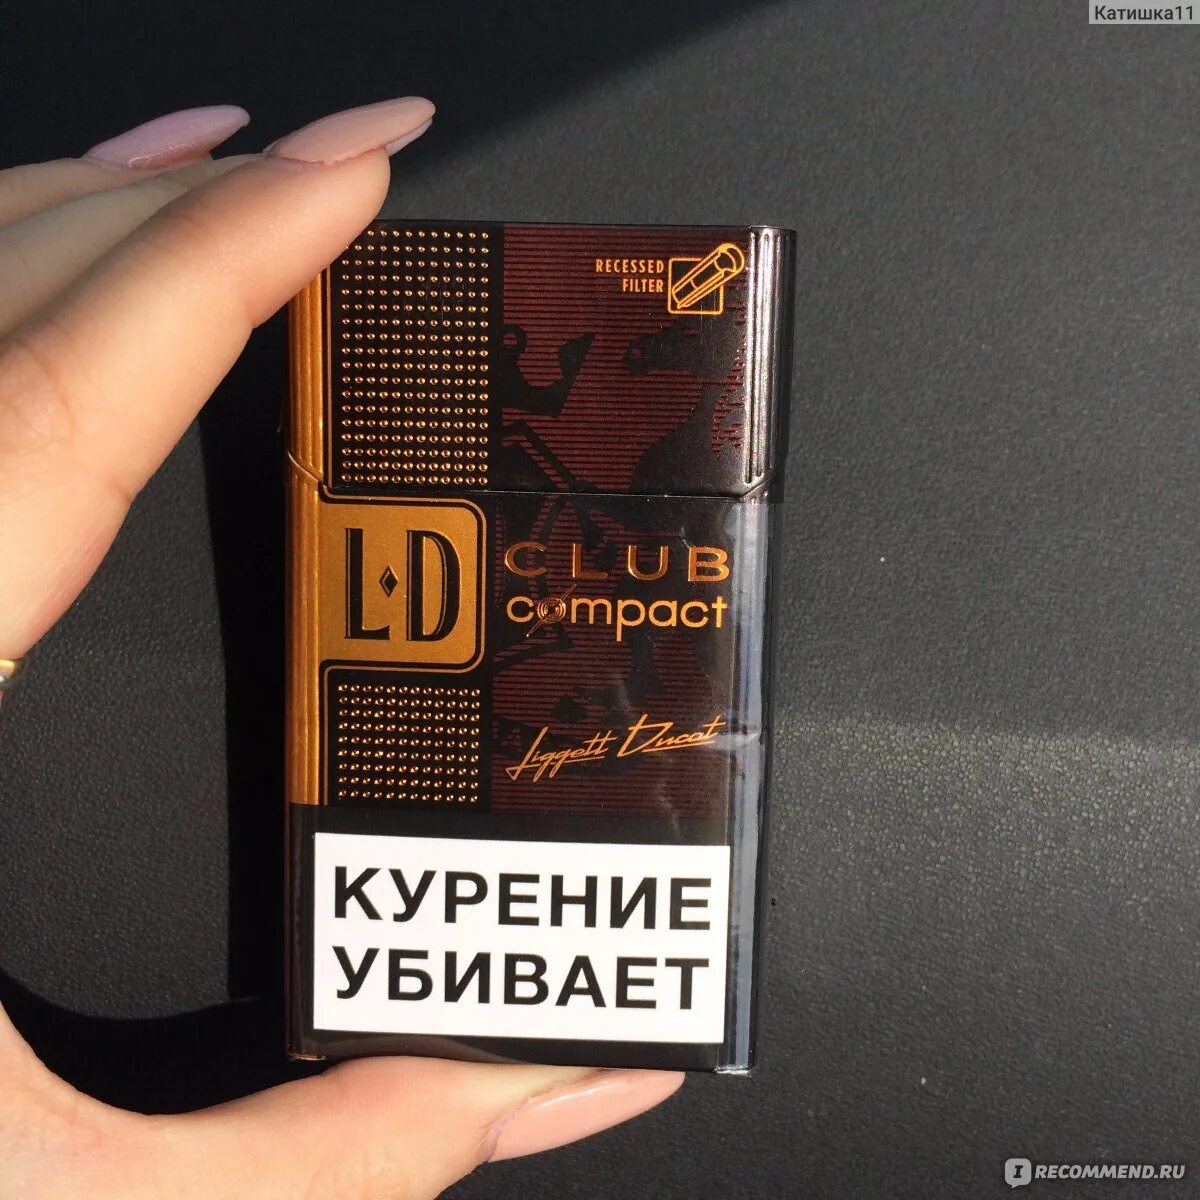 Коричневые сигареты с приятным. Сигареты Japan Tobacco International (JTI) LD Club Lounge -. Сигареты LD Club Compact Lounge. Сигареты ЛД клаб компакт кофе. Сигареты LD Compact Liggett Ducat коричневые вкус.